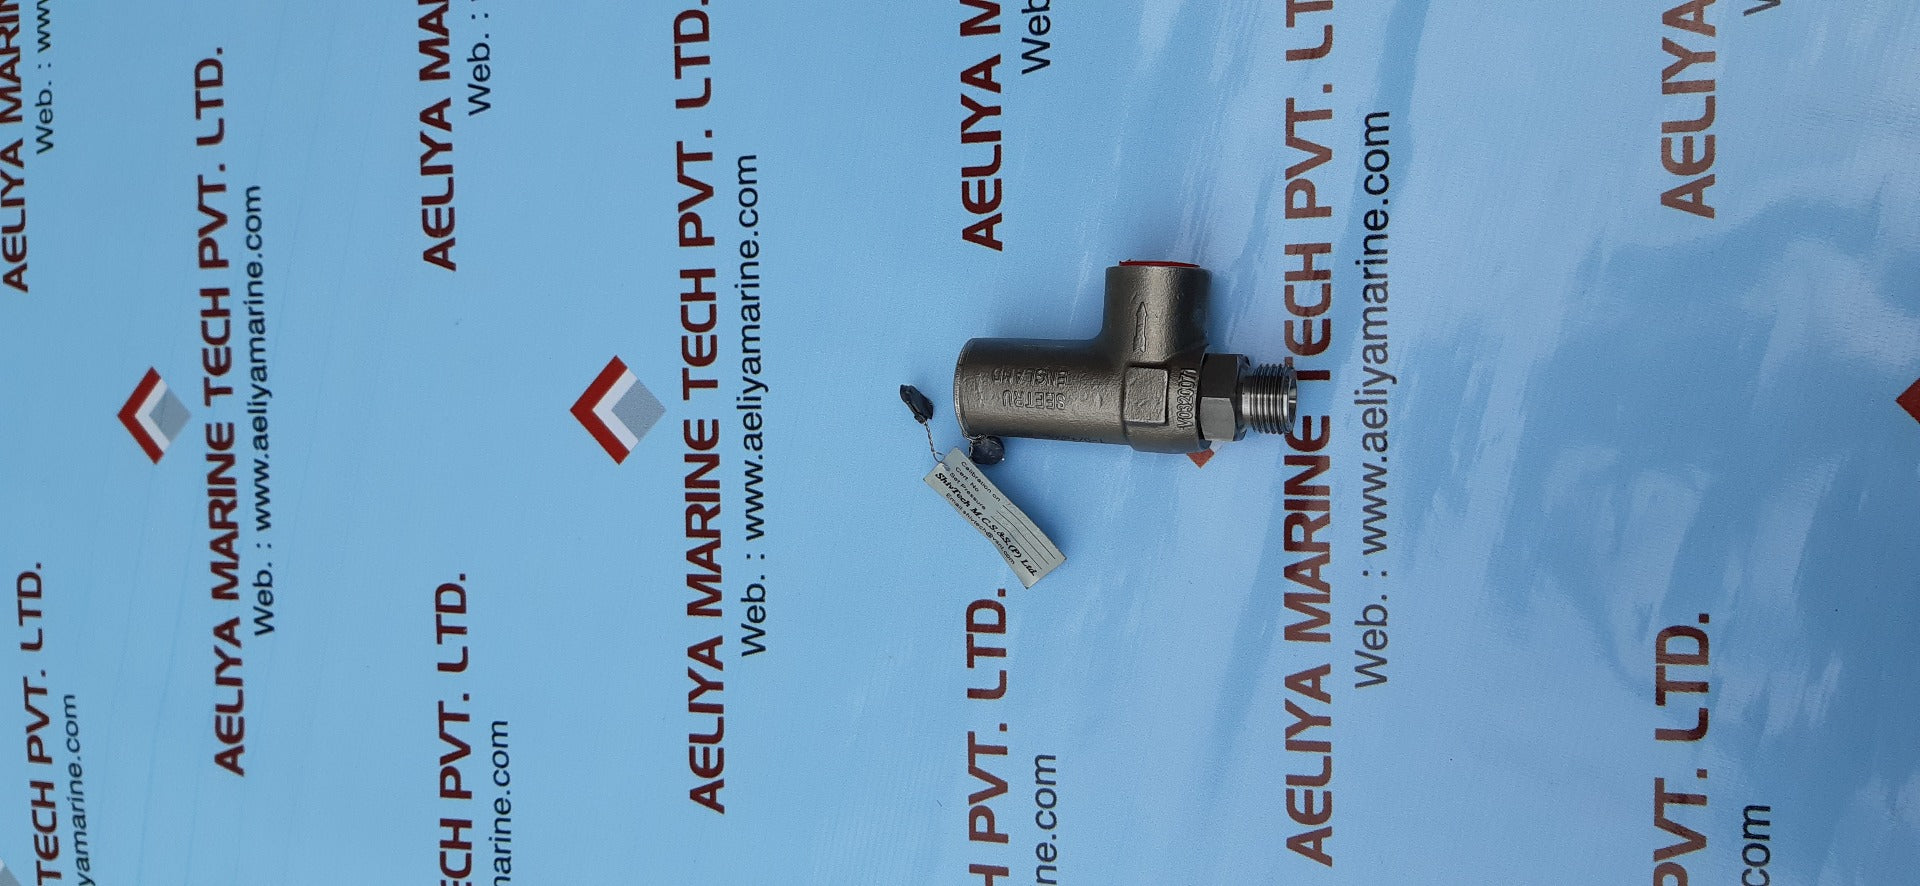 Seetru 359530000 steel safety relief valve 3850psi